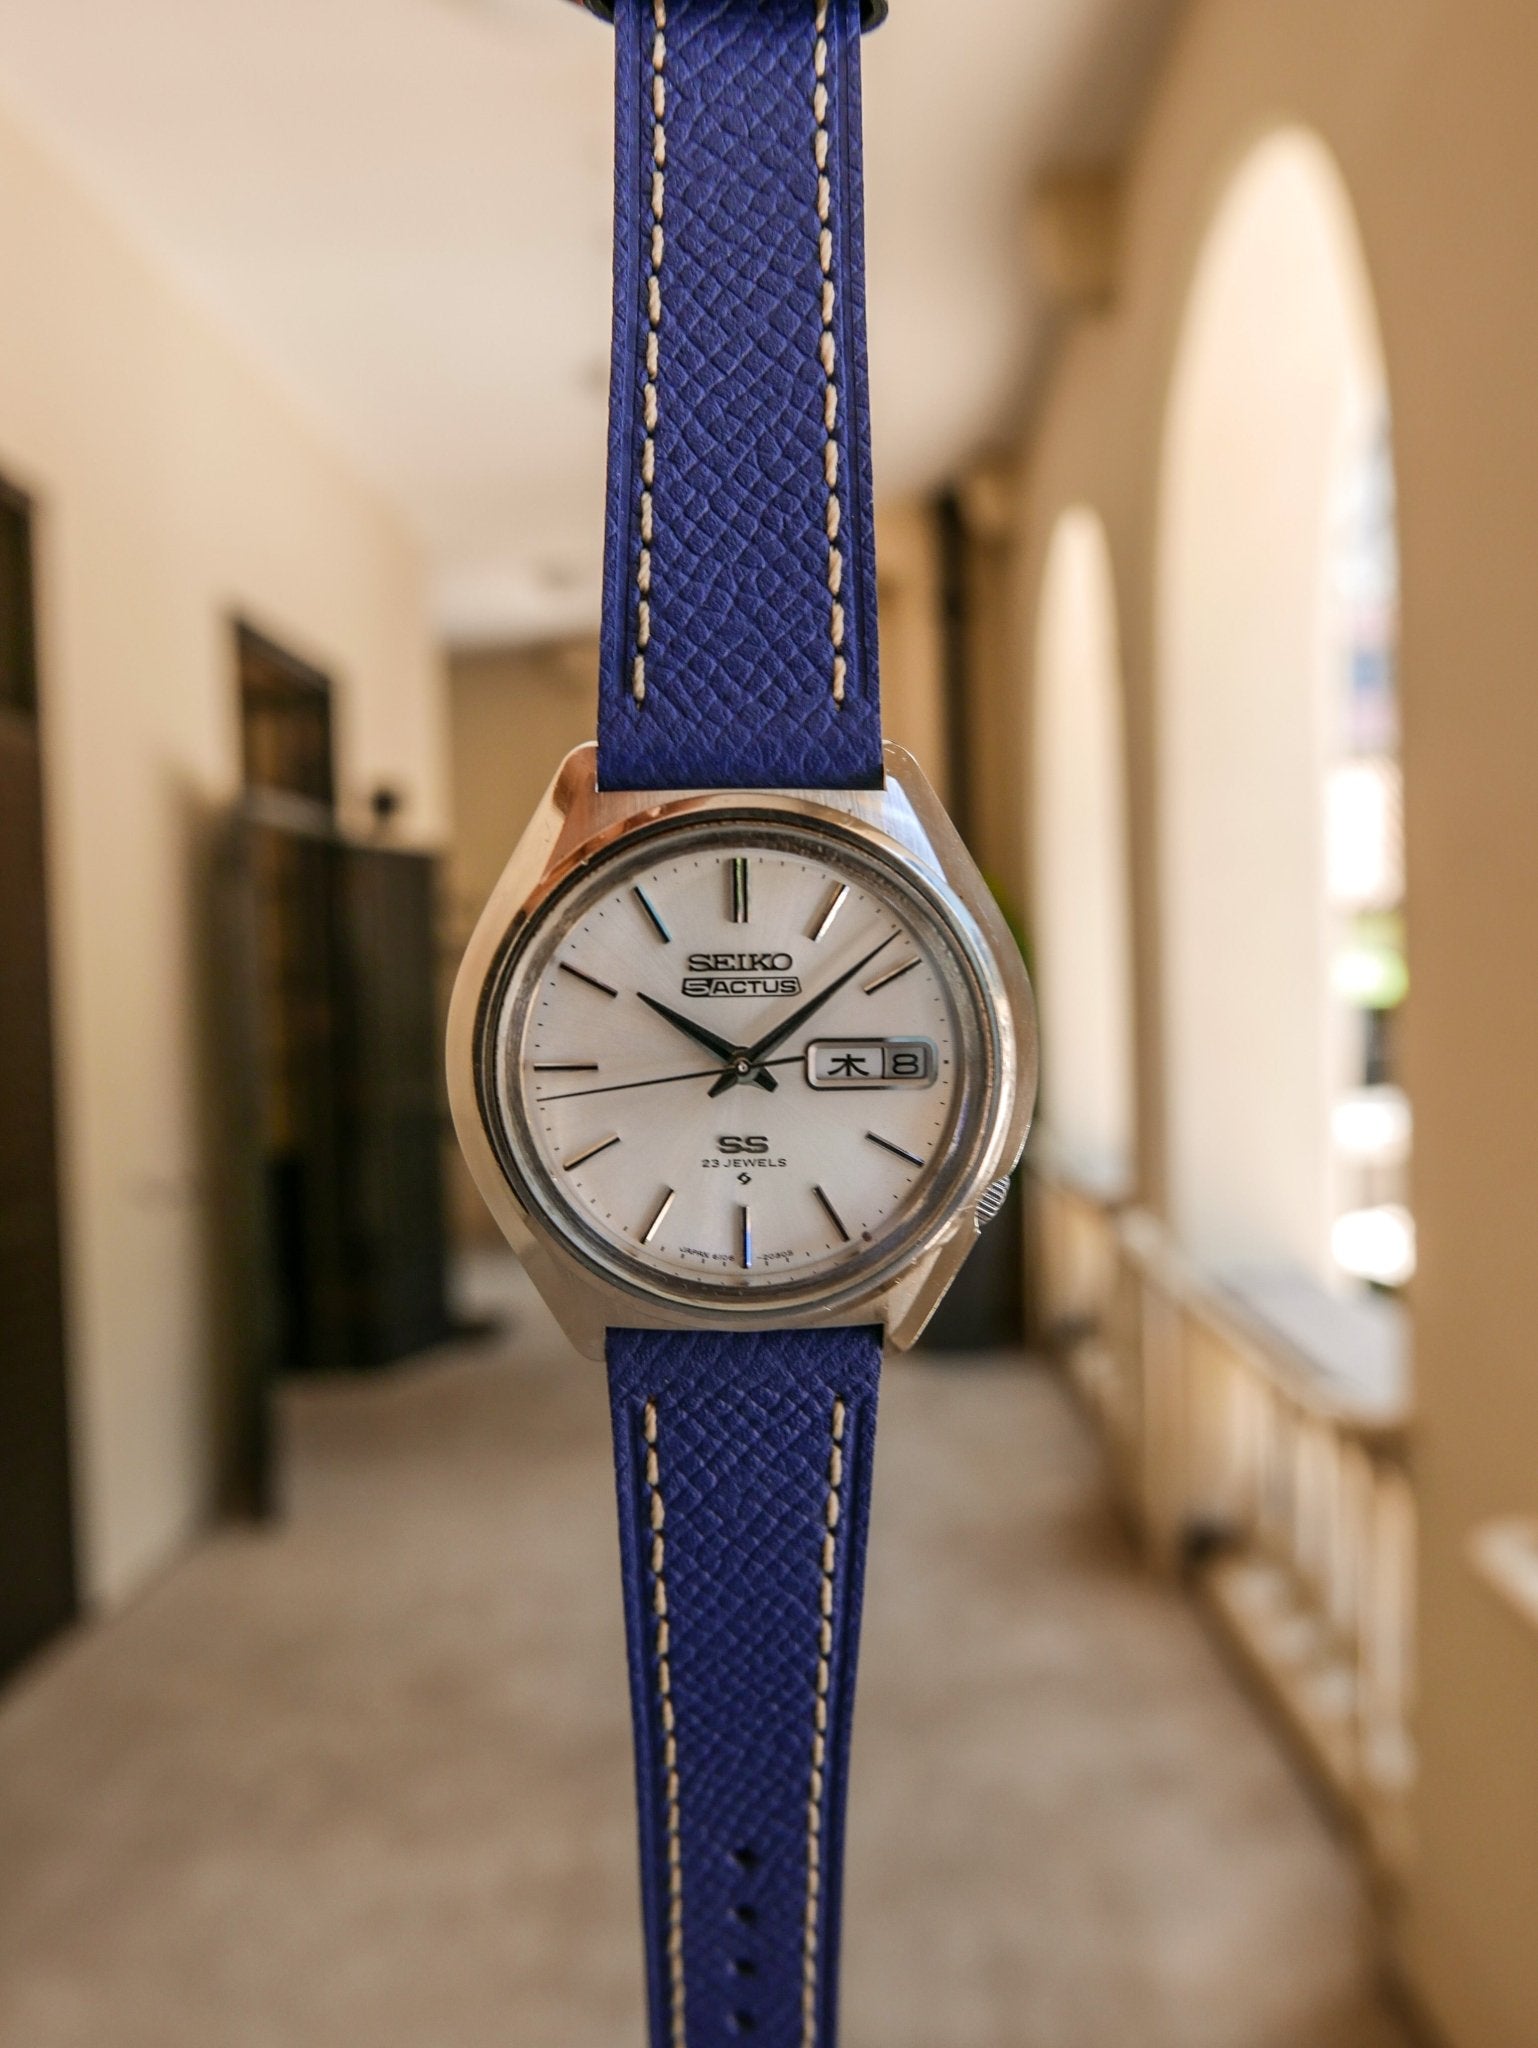 Vintage Watch | SEIKO 5 ACTUS SS 6106 - 7580 - Samurai Vintage Co.